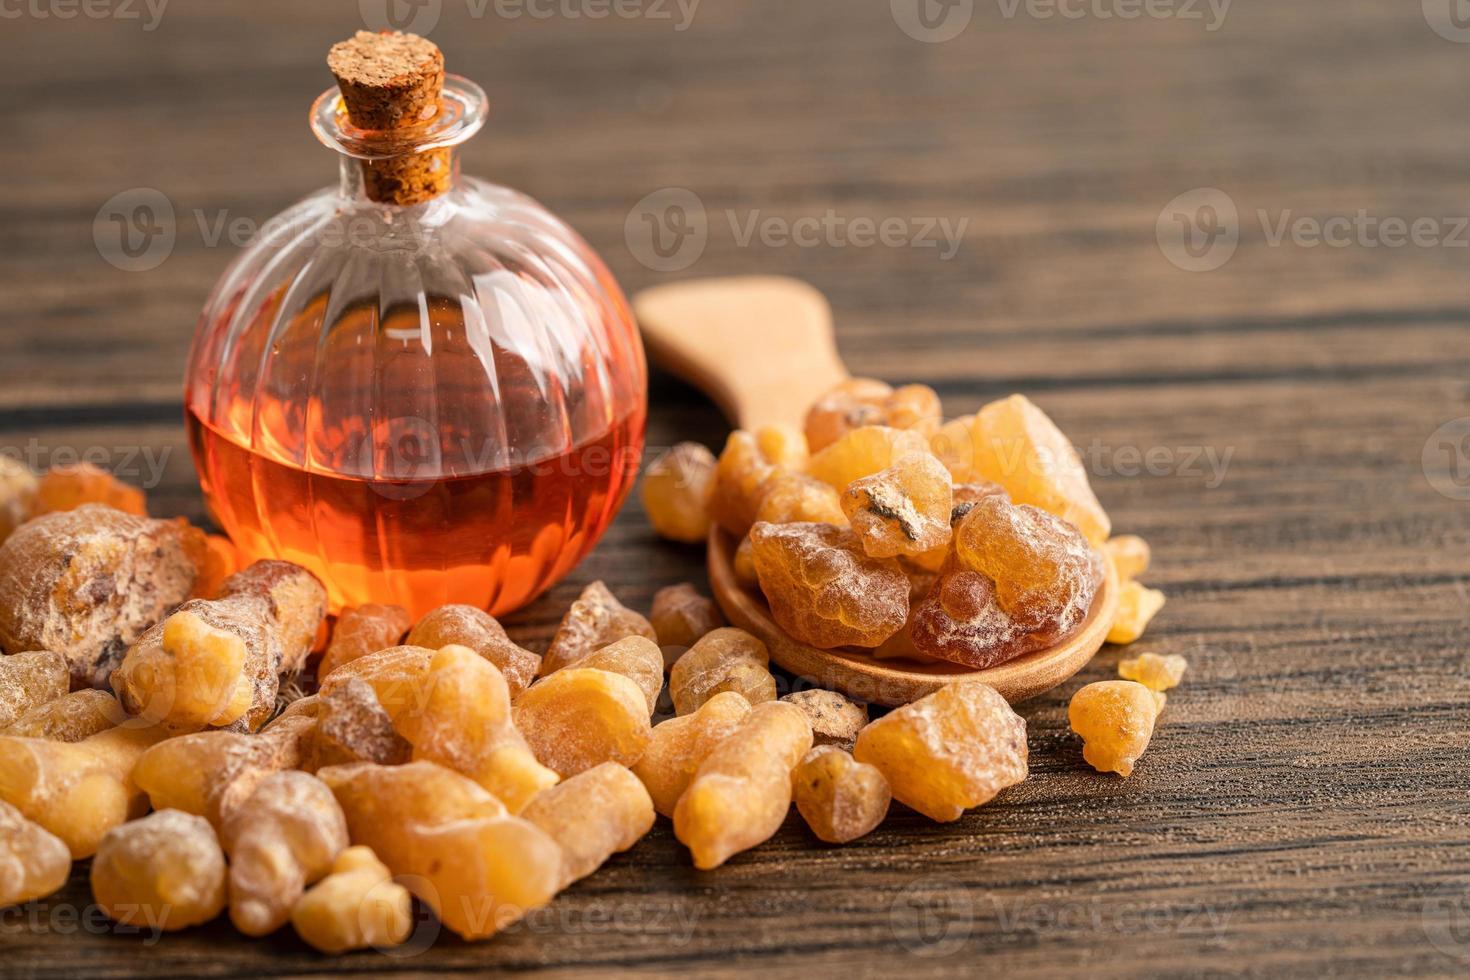 resina aromática de olíbano ou olíbano usada em incensos e perfumes. foto